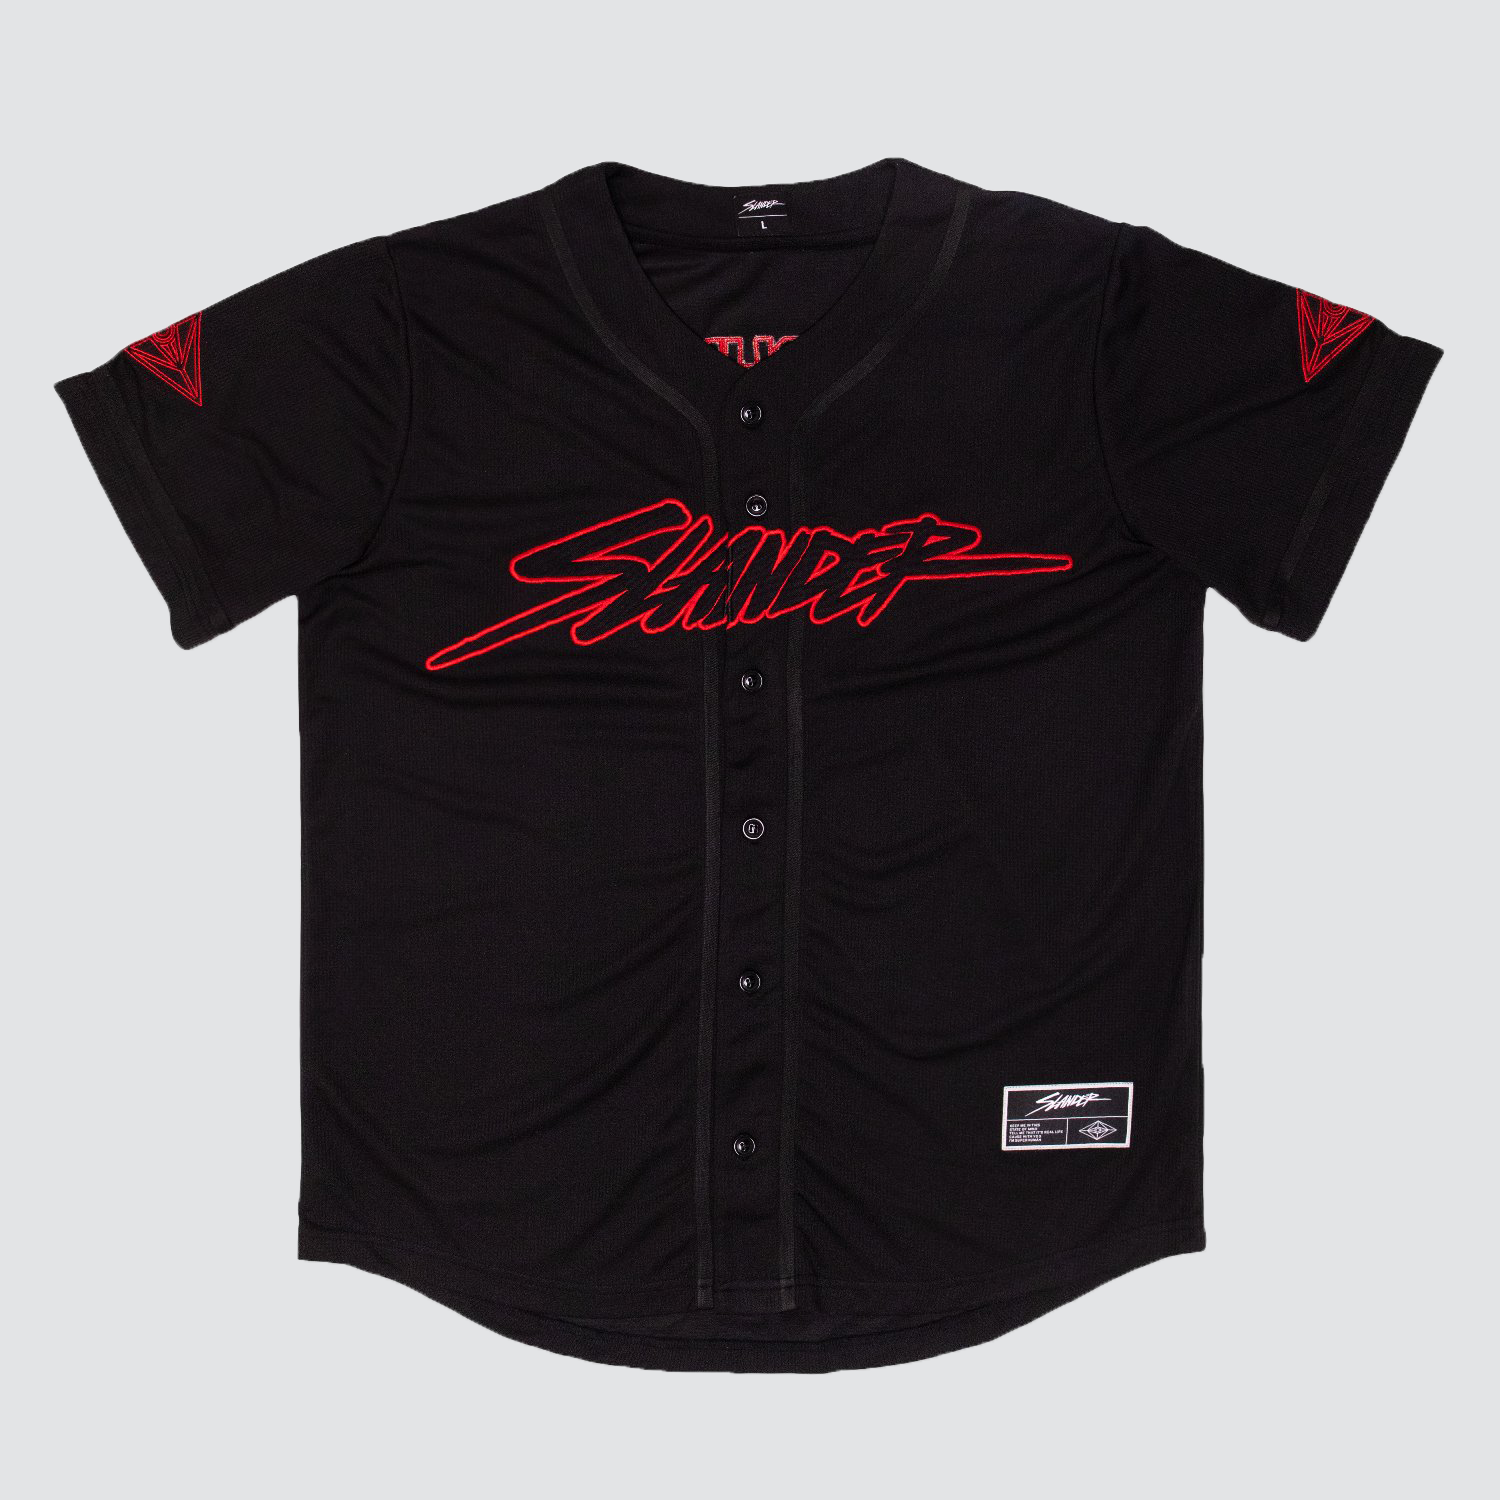 Slander Black/Red Festival Jersey – Slander Merchandise